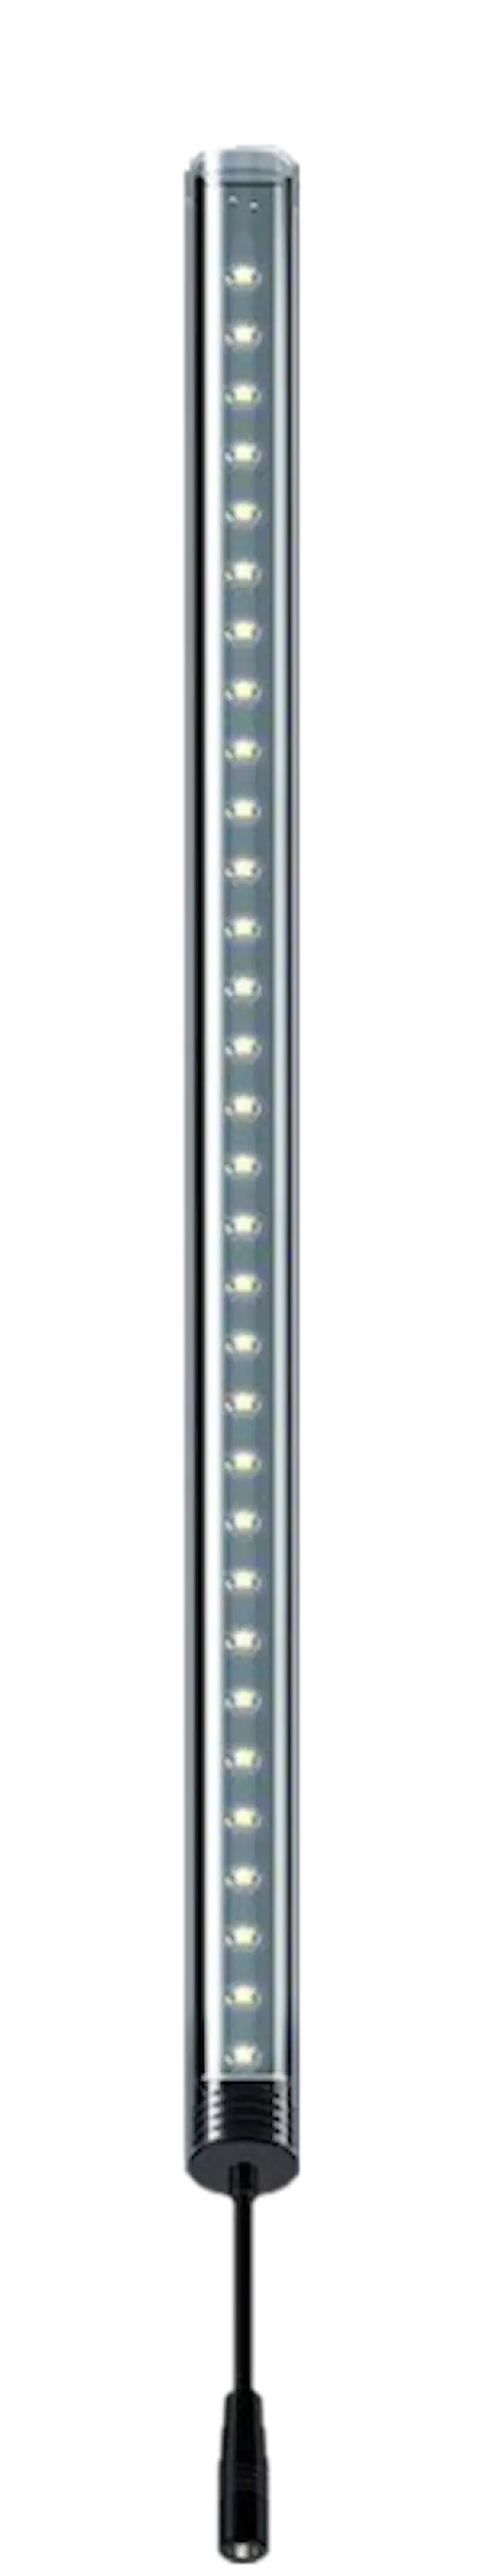 LightWave LED komplett sett, 720 - 800 mm